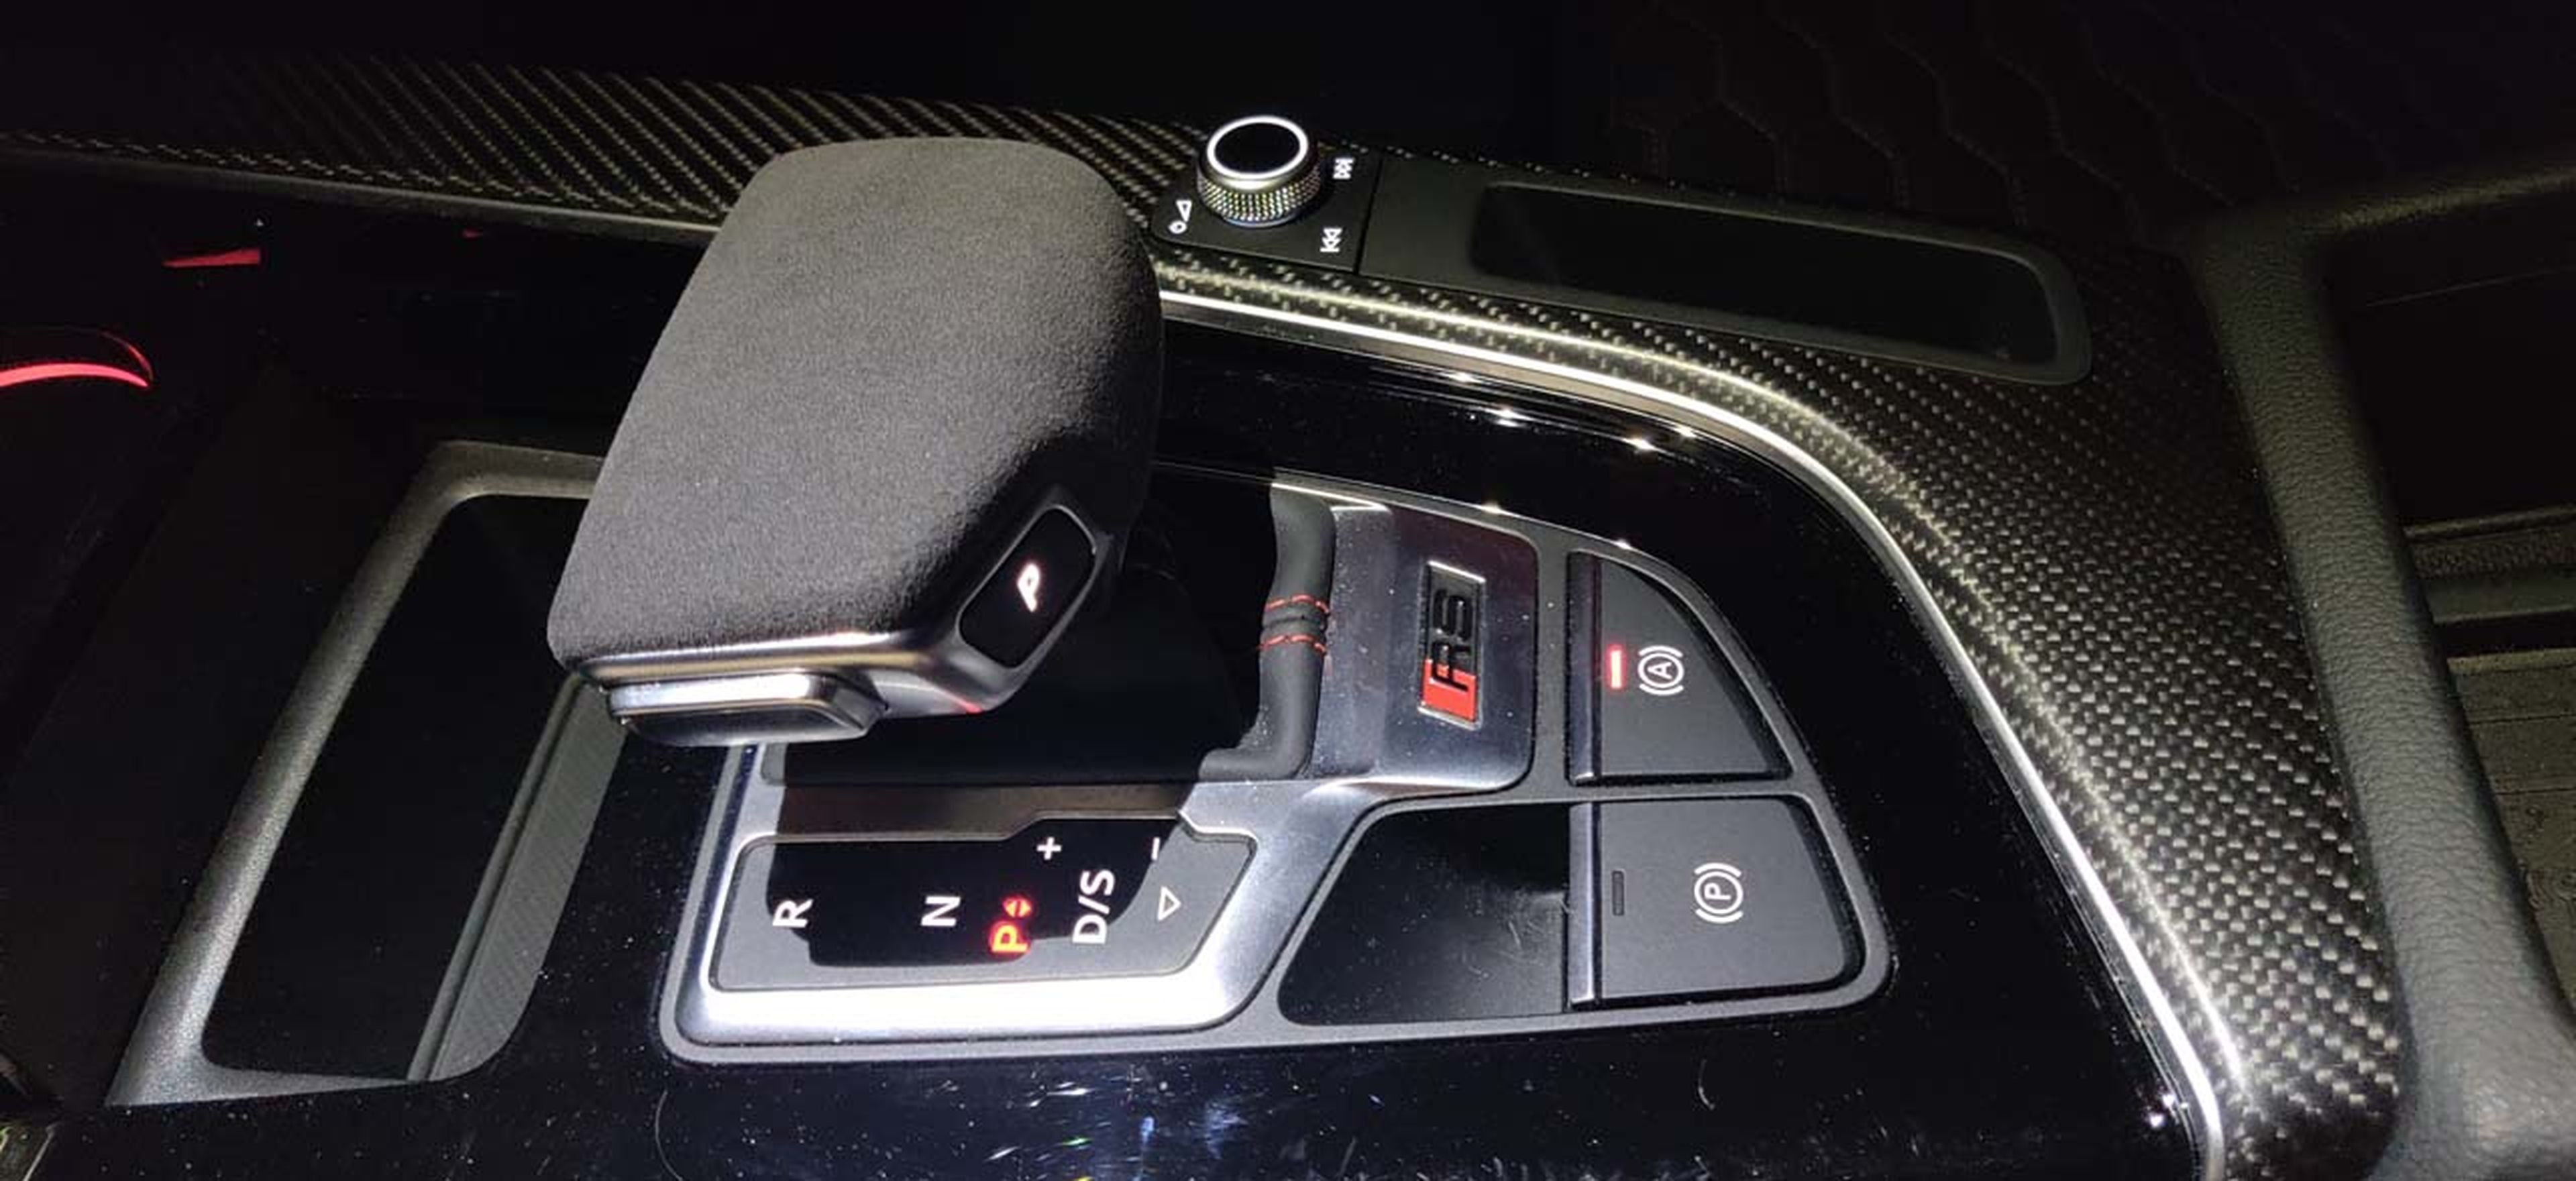 Prueba Audi RS 5 Coupé